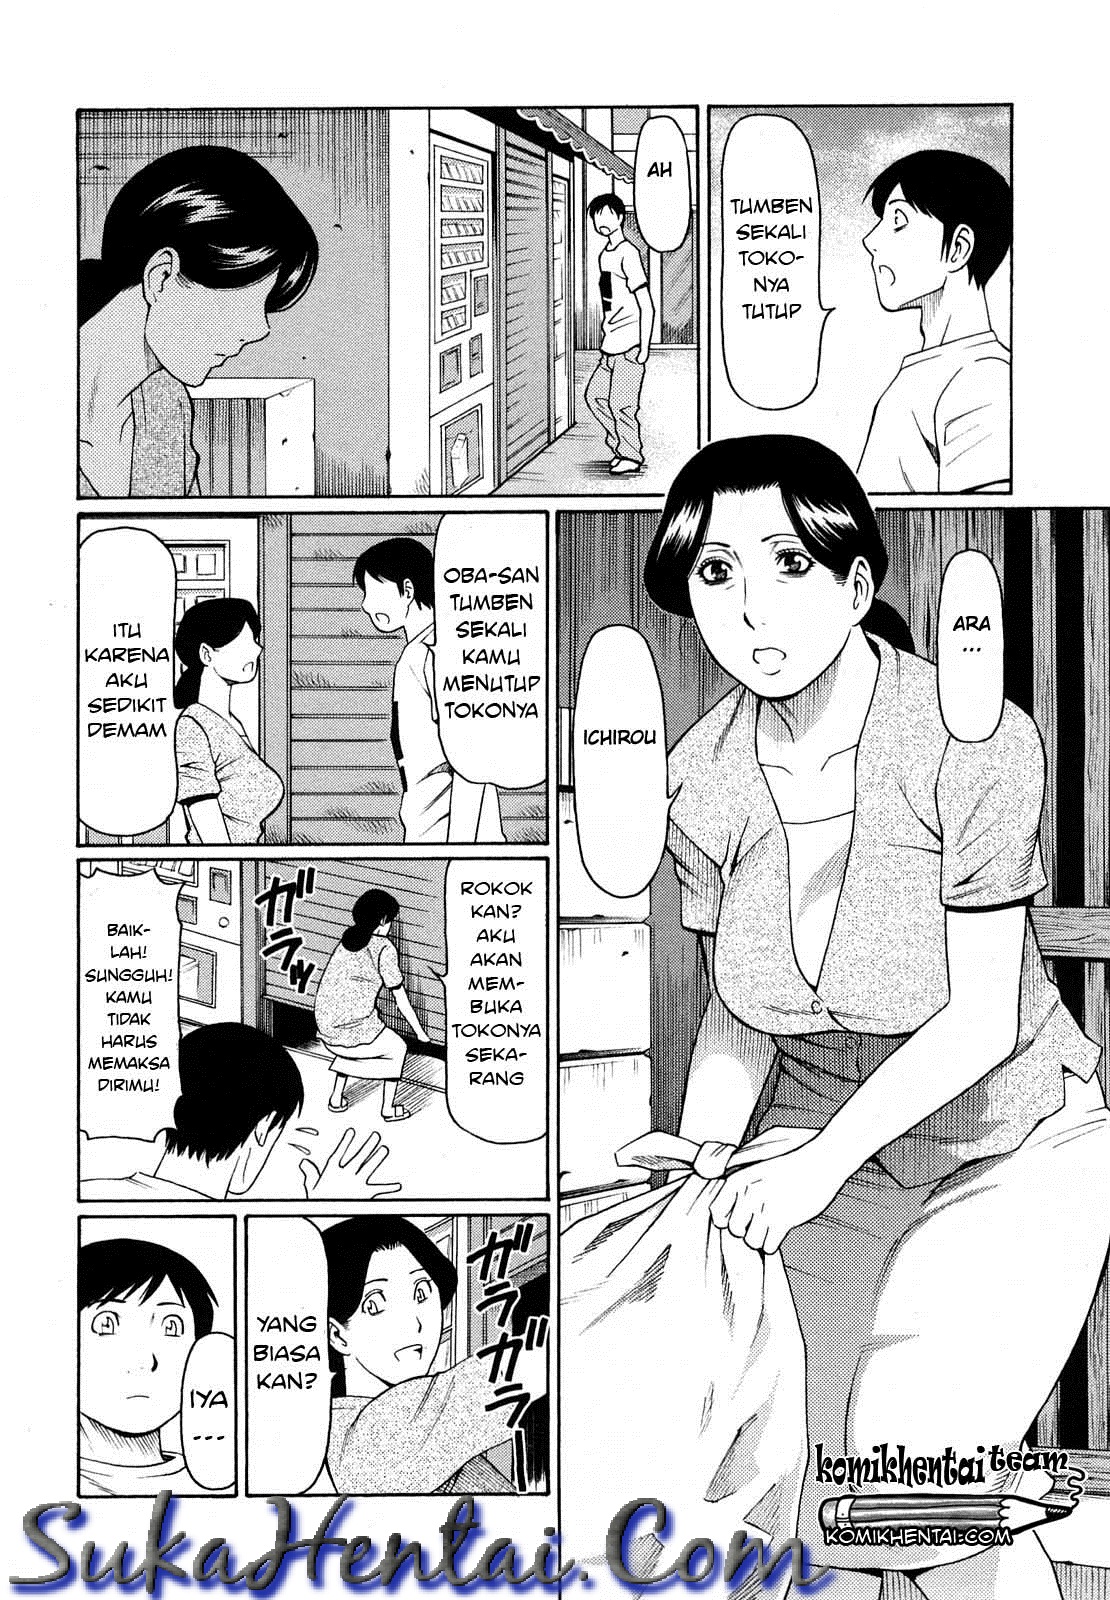 Komik Sex Janda Bahenol Gudang Komik Manga Hentai Sex Hot Dewasa Terbaru